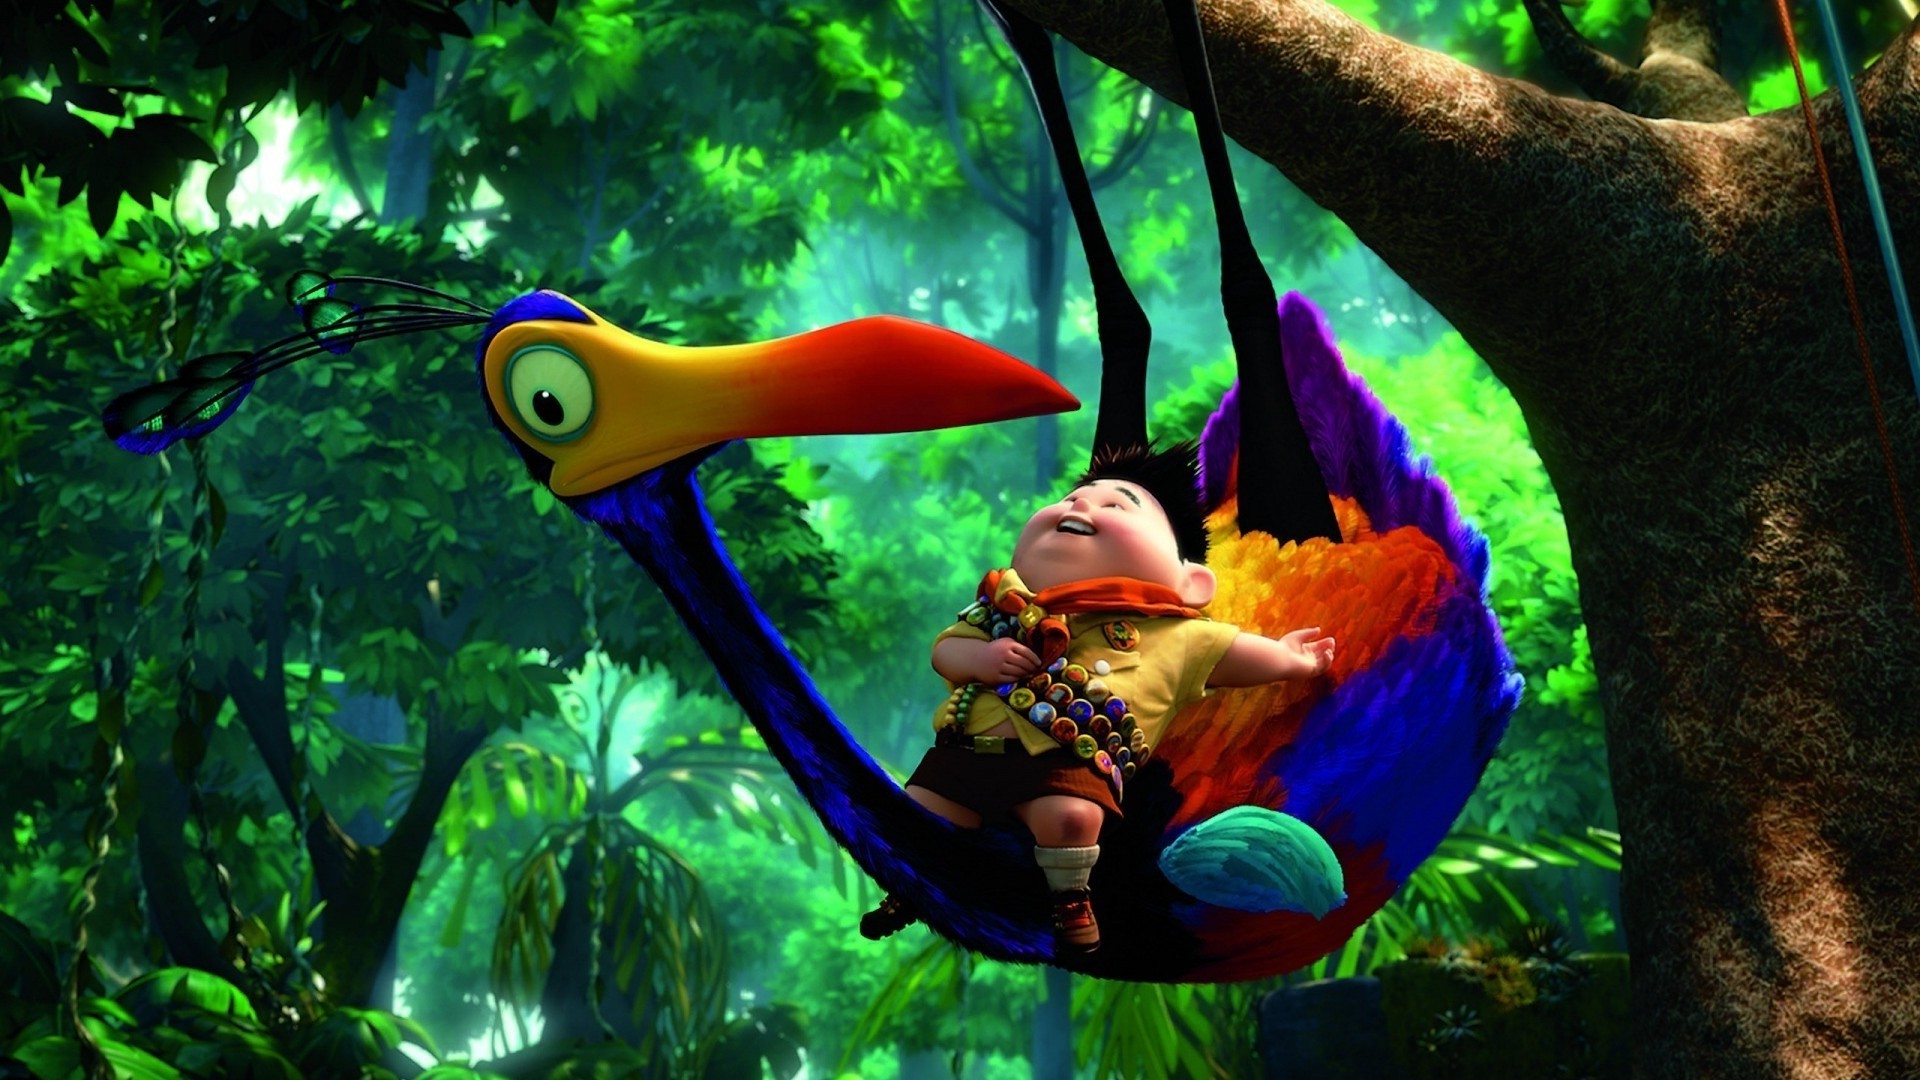 fond d'écran disney pixar,dessin animé,jungle,arbre,animation,forêt